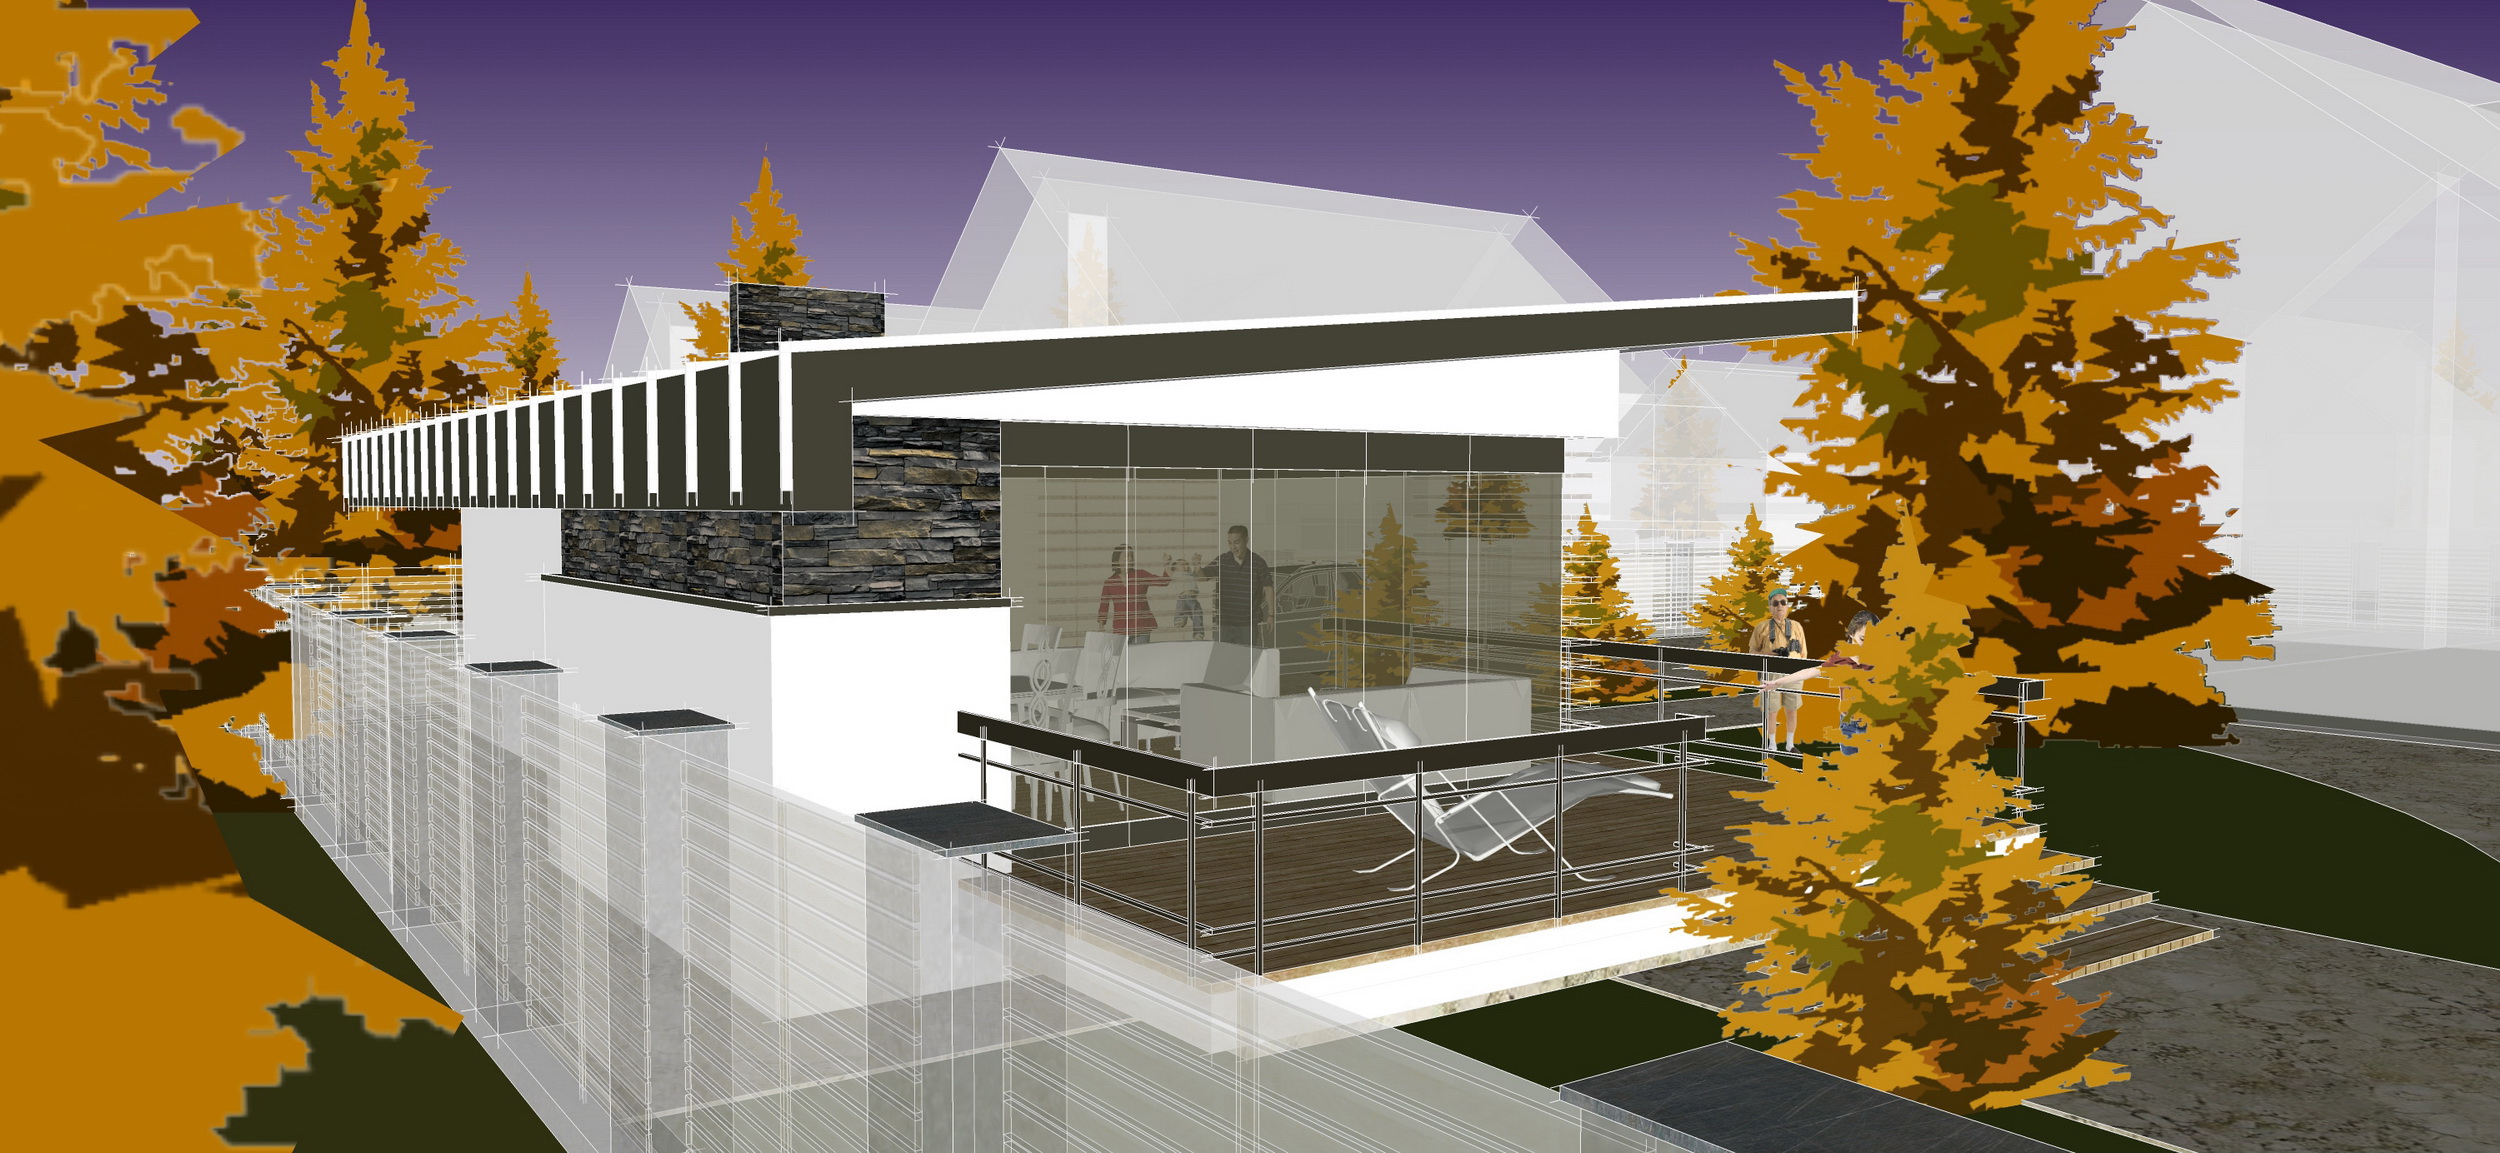 ДИЗАЙН фасада здания с подбором отделочных материалов, качественная визуализация объекта (3D проект) - фотография